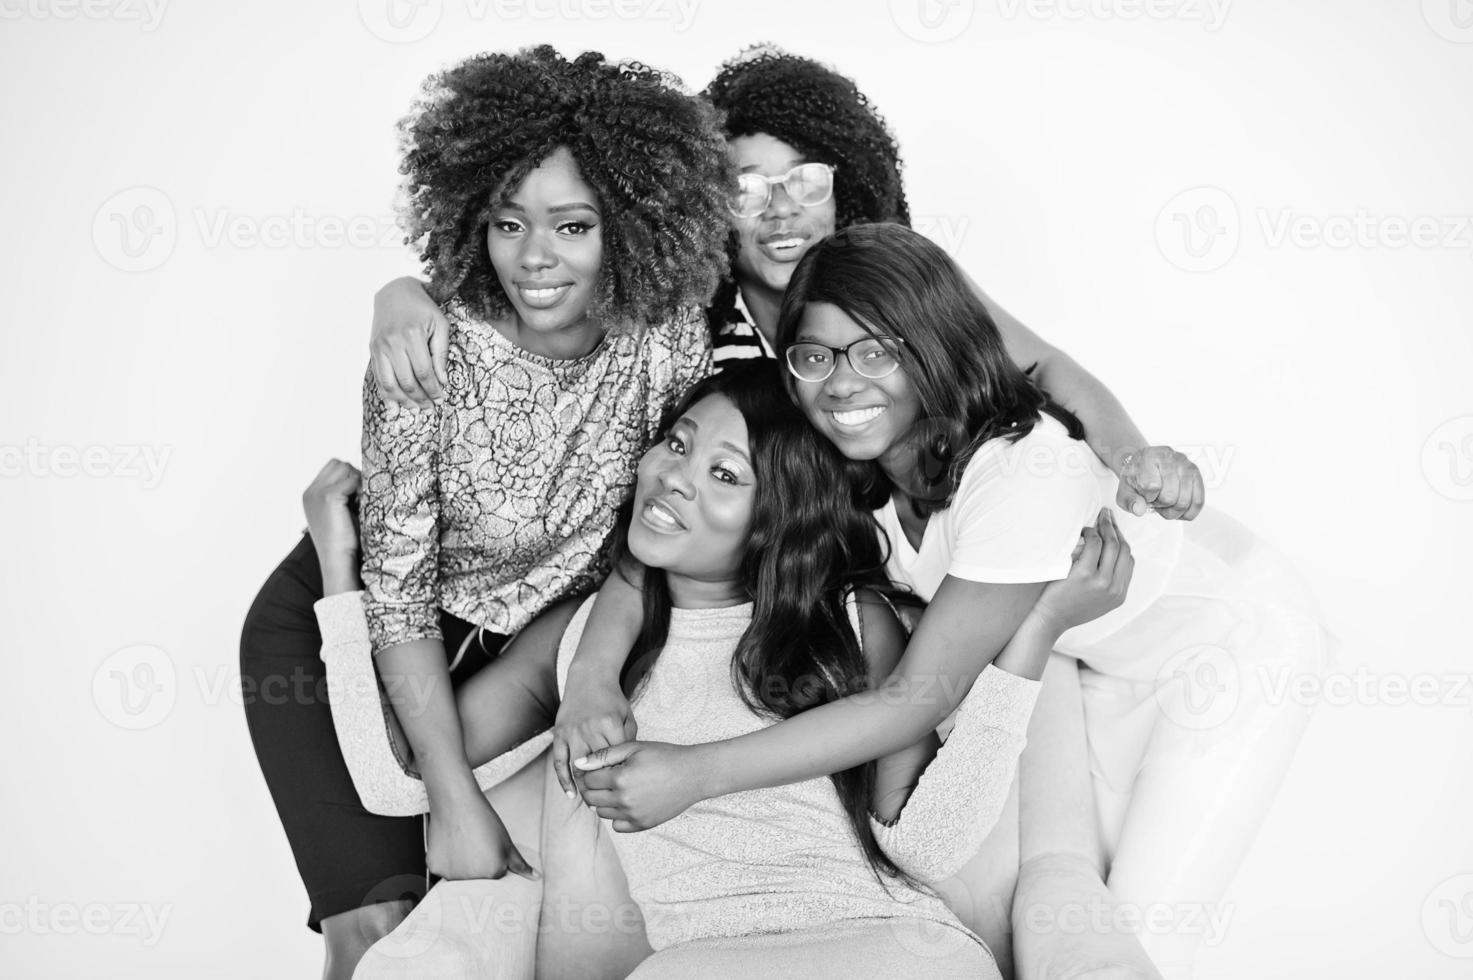 felices y brillantes momentos positivos de cuatro niñas africanas. divirtiéndose y sonriendo en una silla contra una pared blanca vacía. momentos encantadores de cuatro mejores amigos abrazando. foto